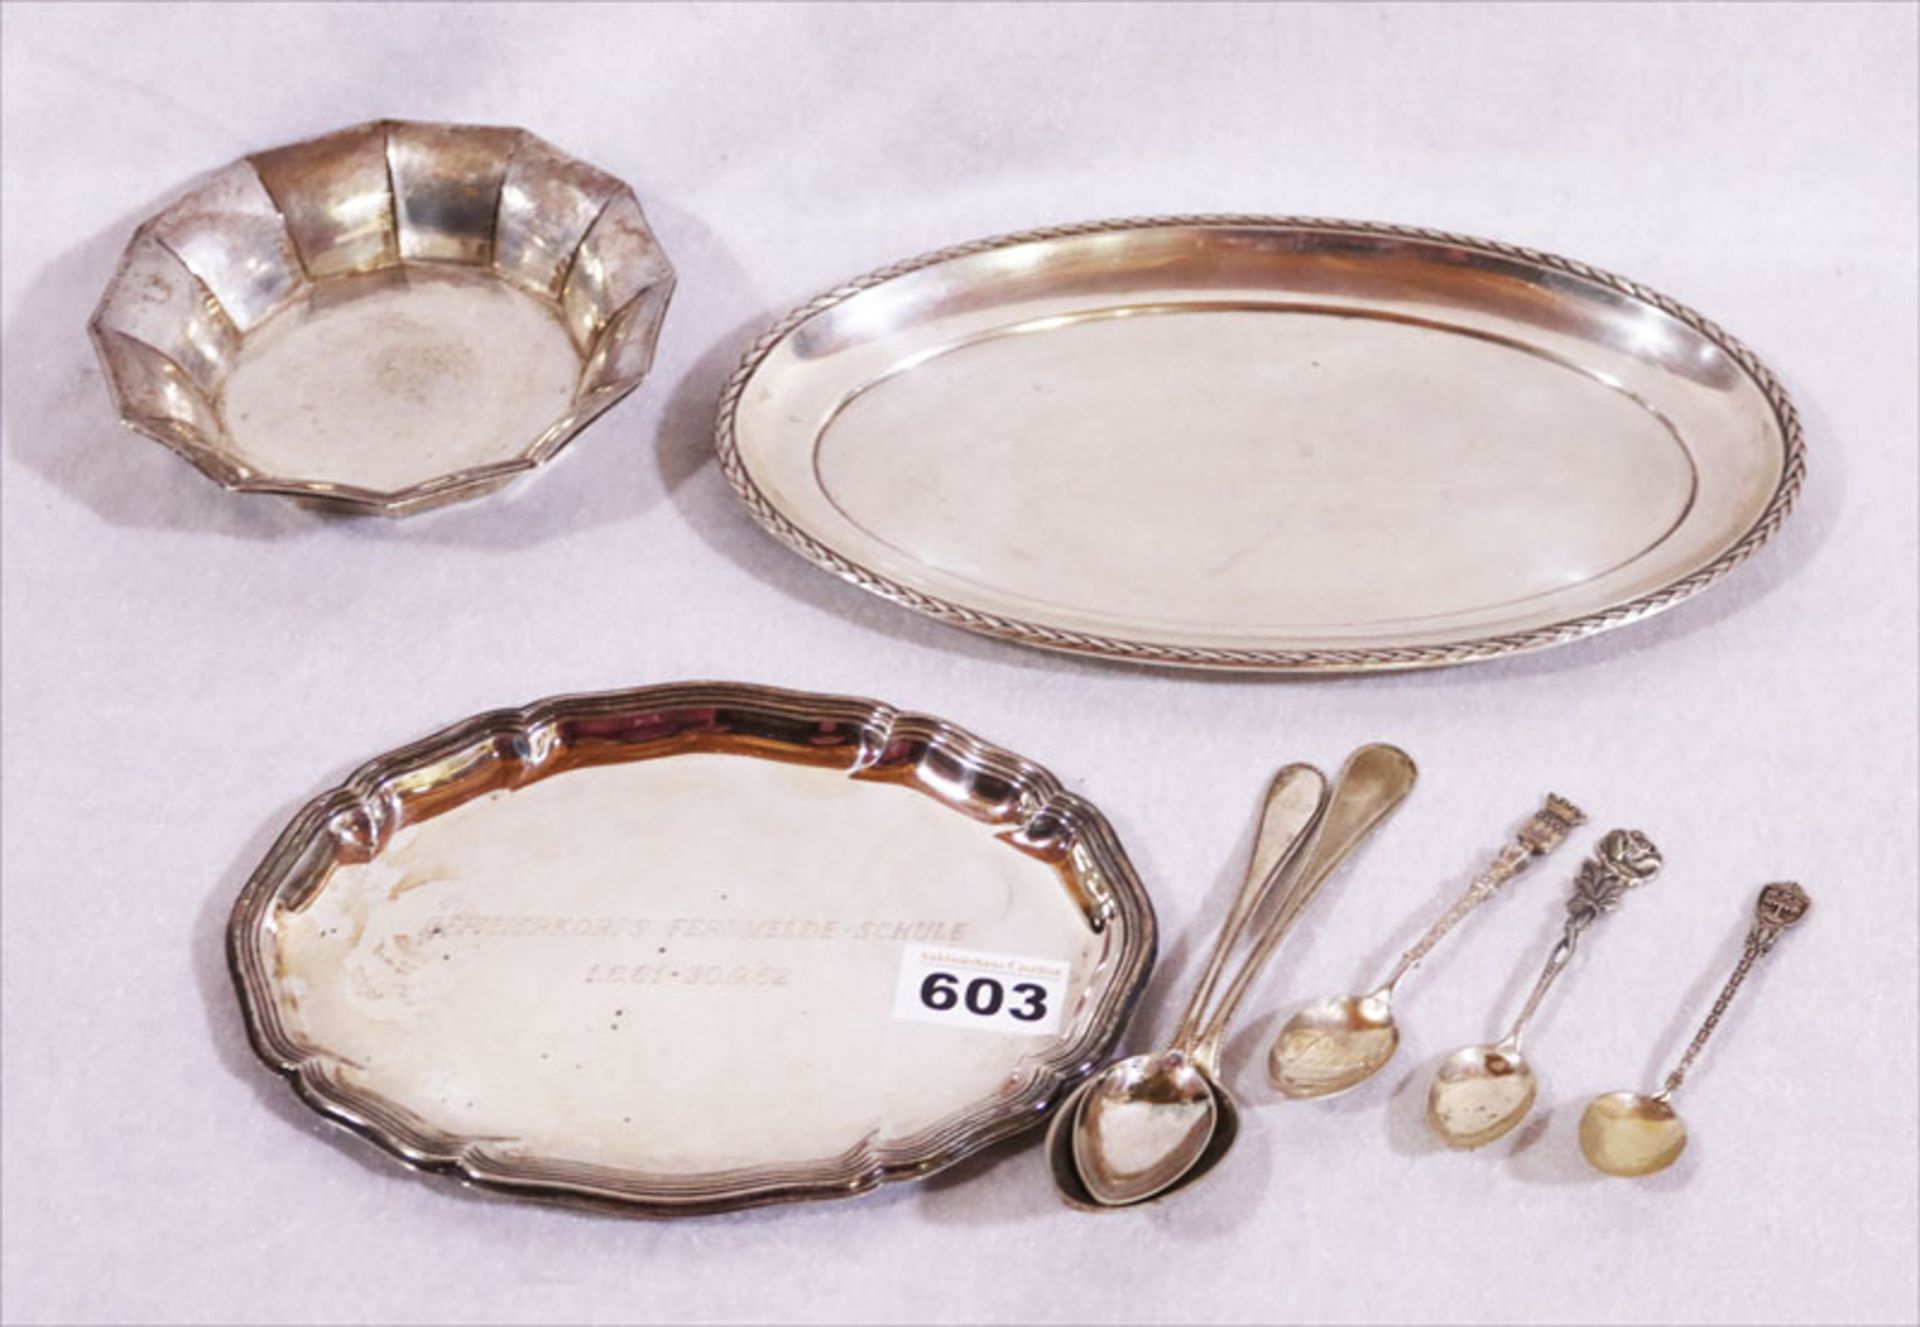 Silber Konvolut: 2 ovale Tabletts, Schälchen und 5 Löffel, 800/835 Silber, zus. 590 gr., teils mit